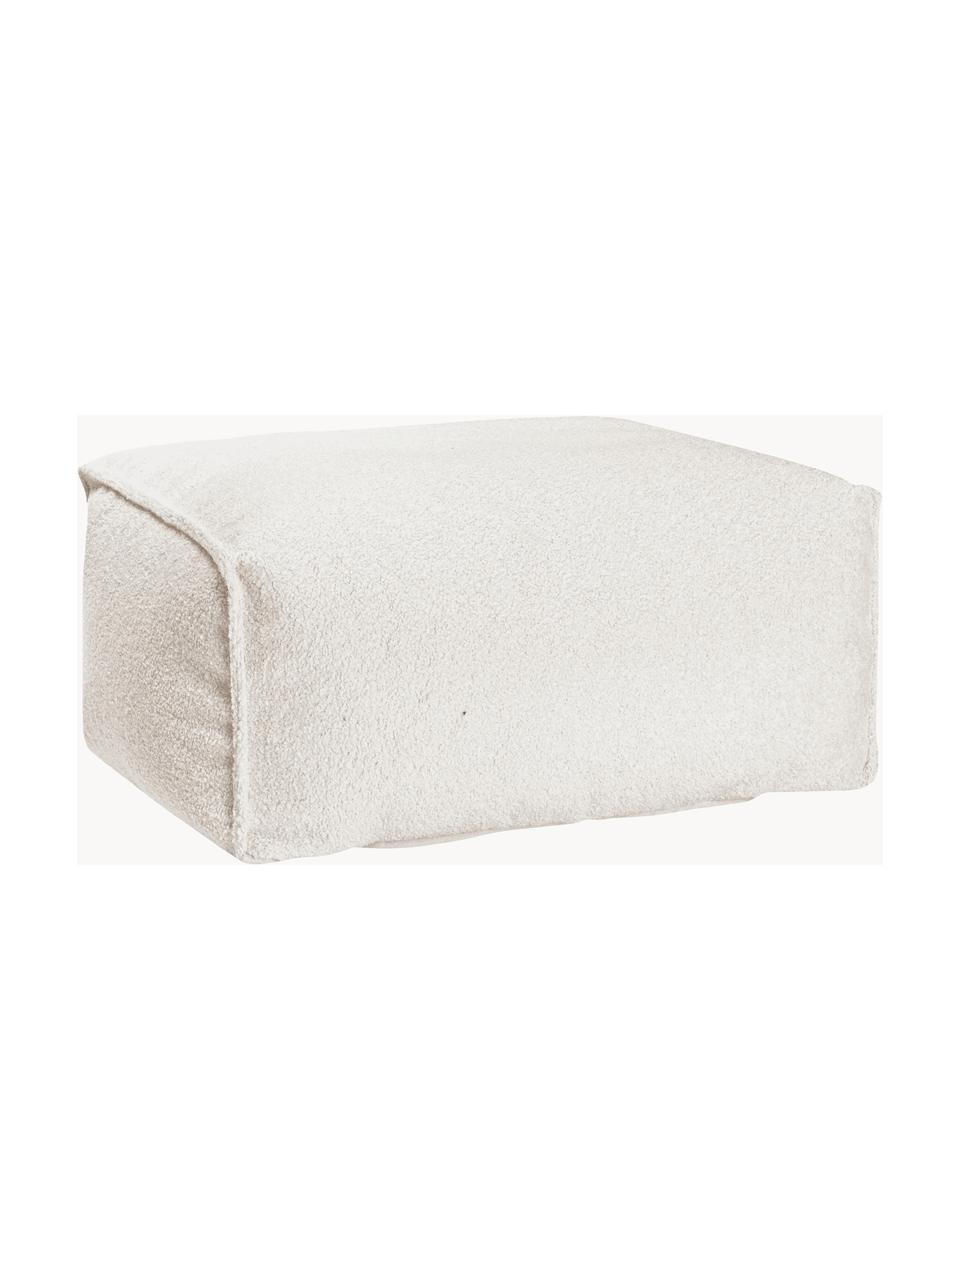 Poduszka podłogowa Bouclé Woolly, Tapicerka: Bouclé (100% poliester) B, Złamana biel, S 65 x W 35 cm